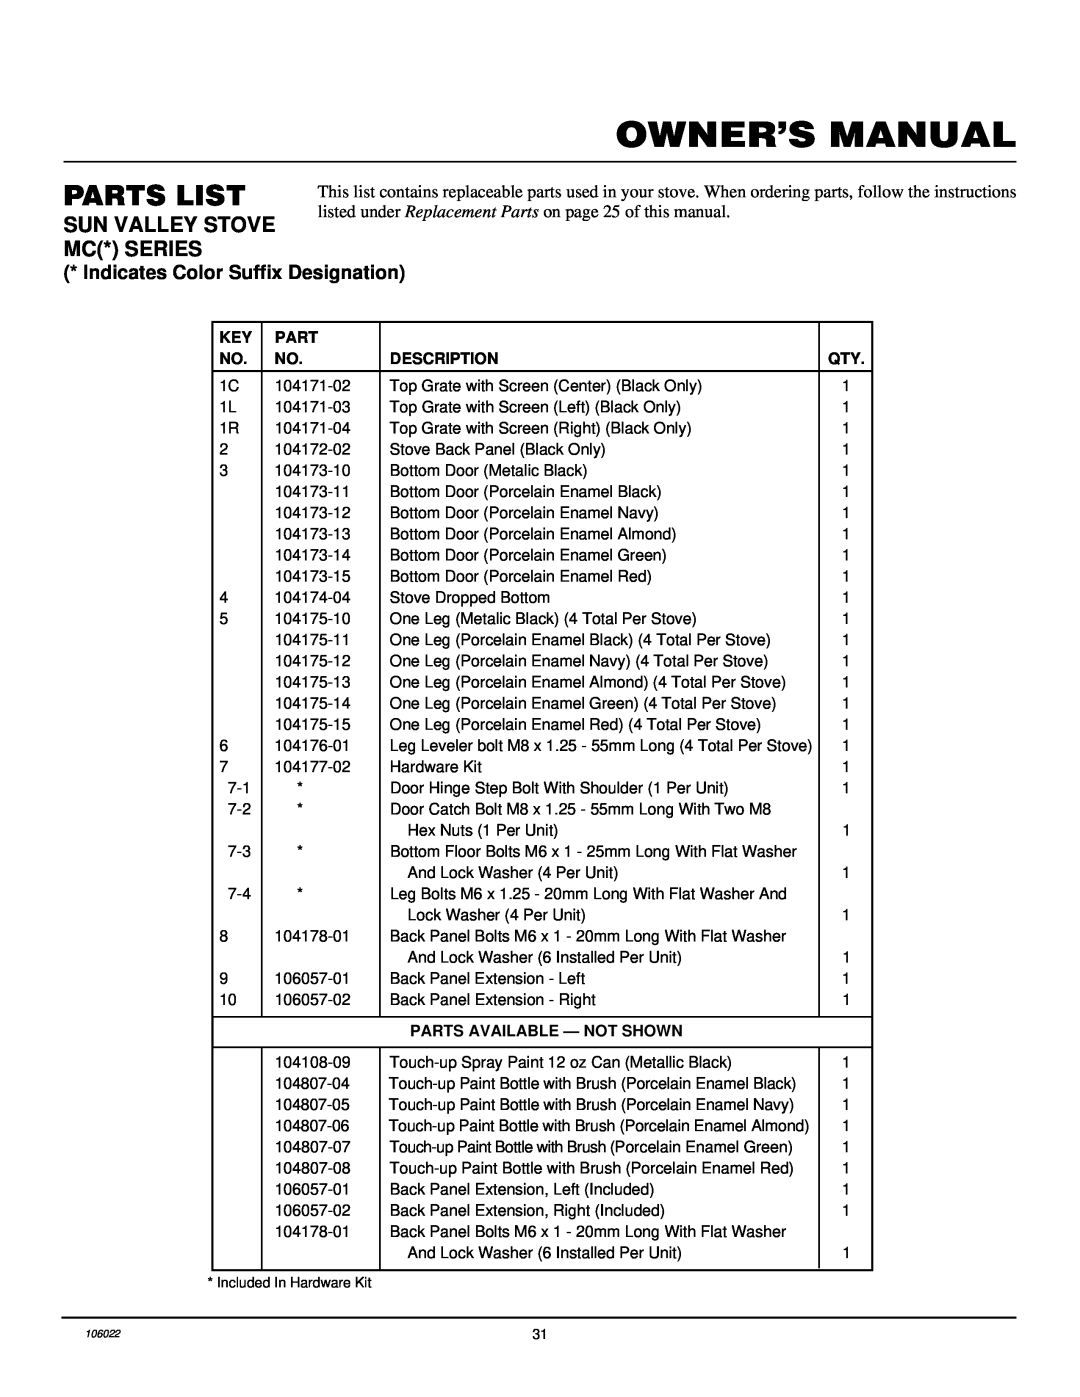 Desa MSBVBN, MSBVBP Parts List, Sun Valley Stove Mc* Series, Indicates Color Suffix Designation, Description 